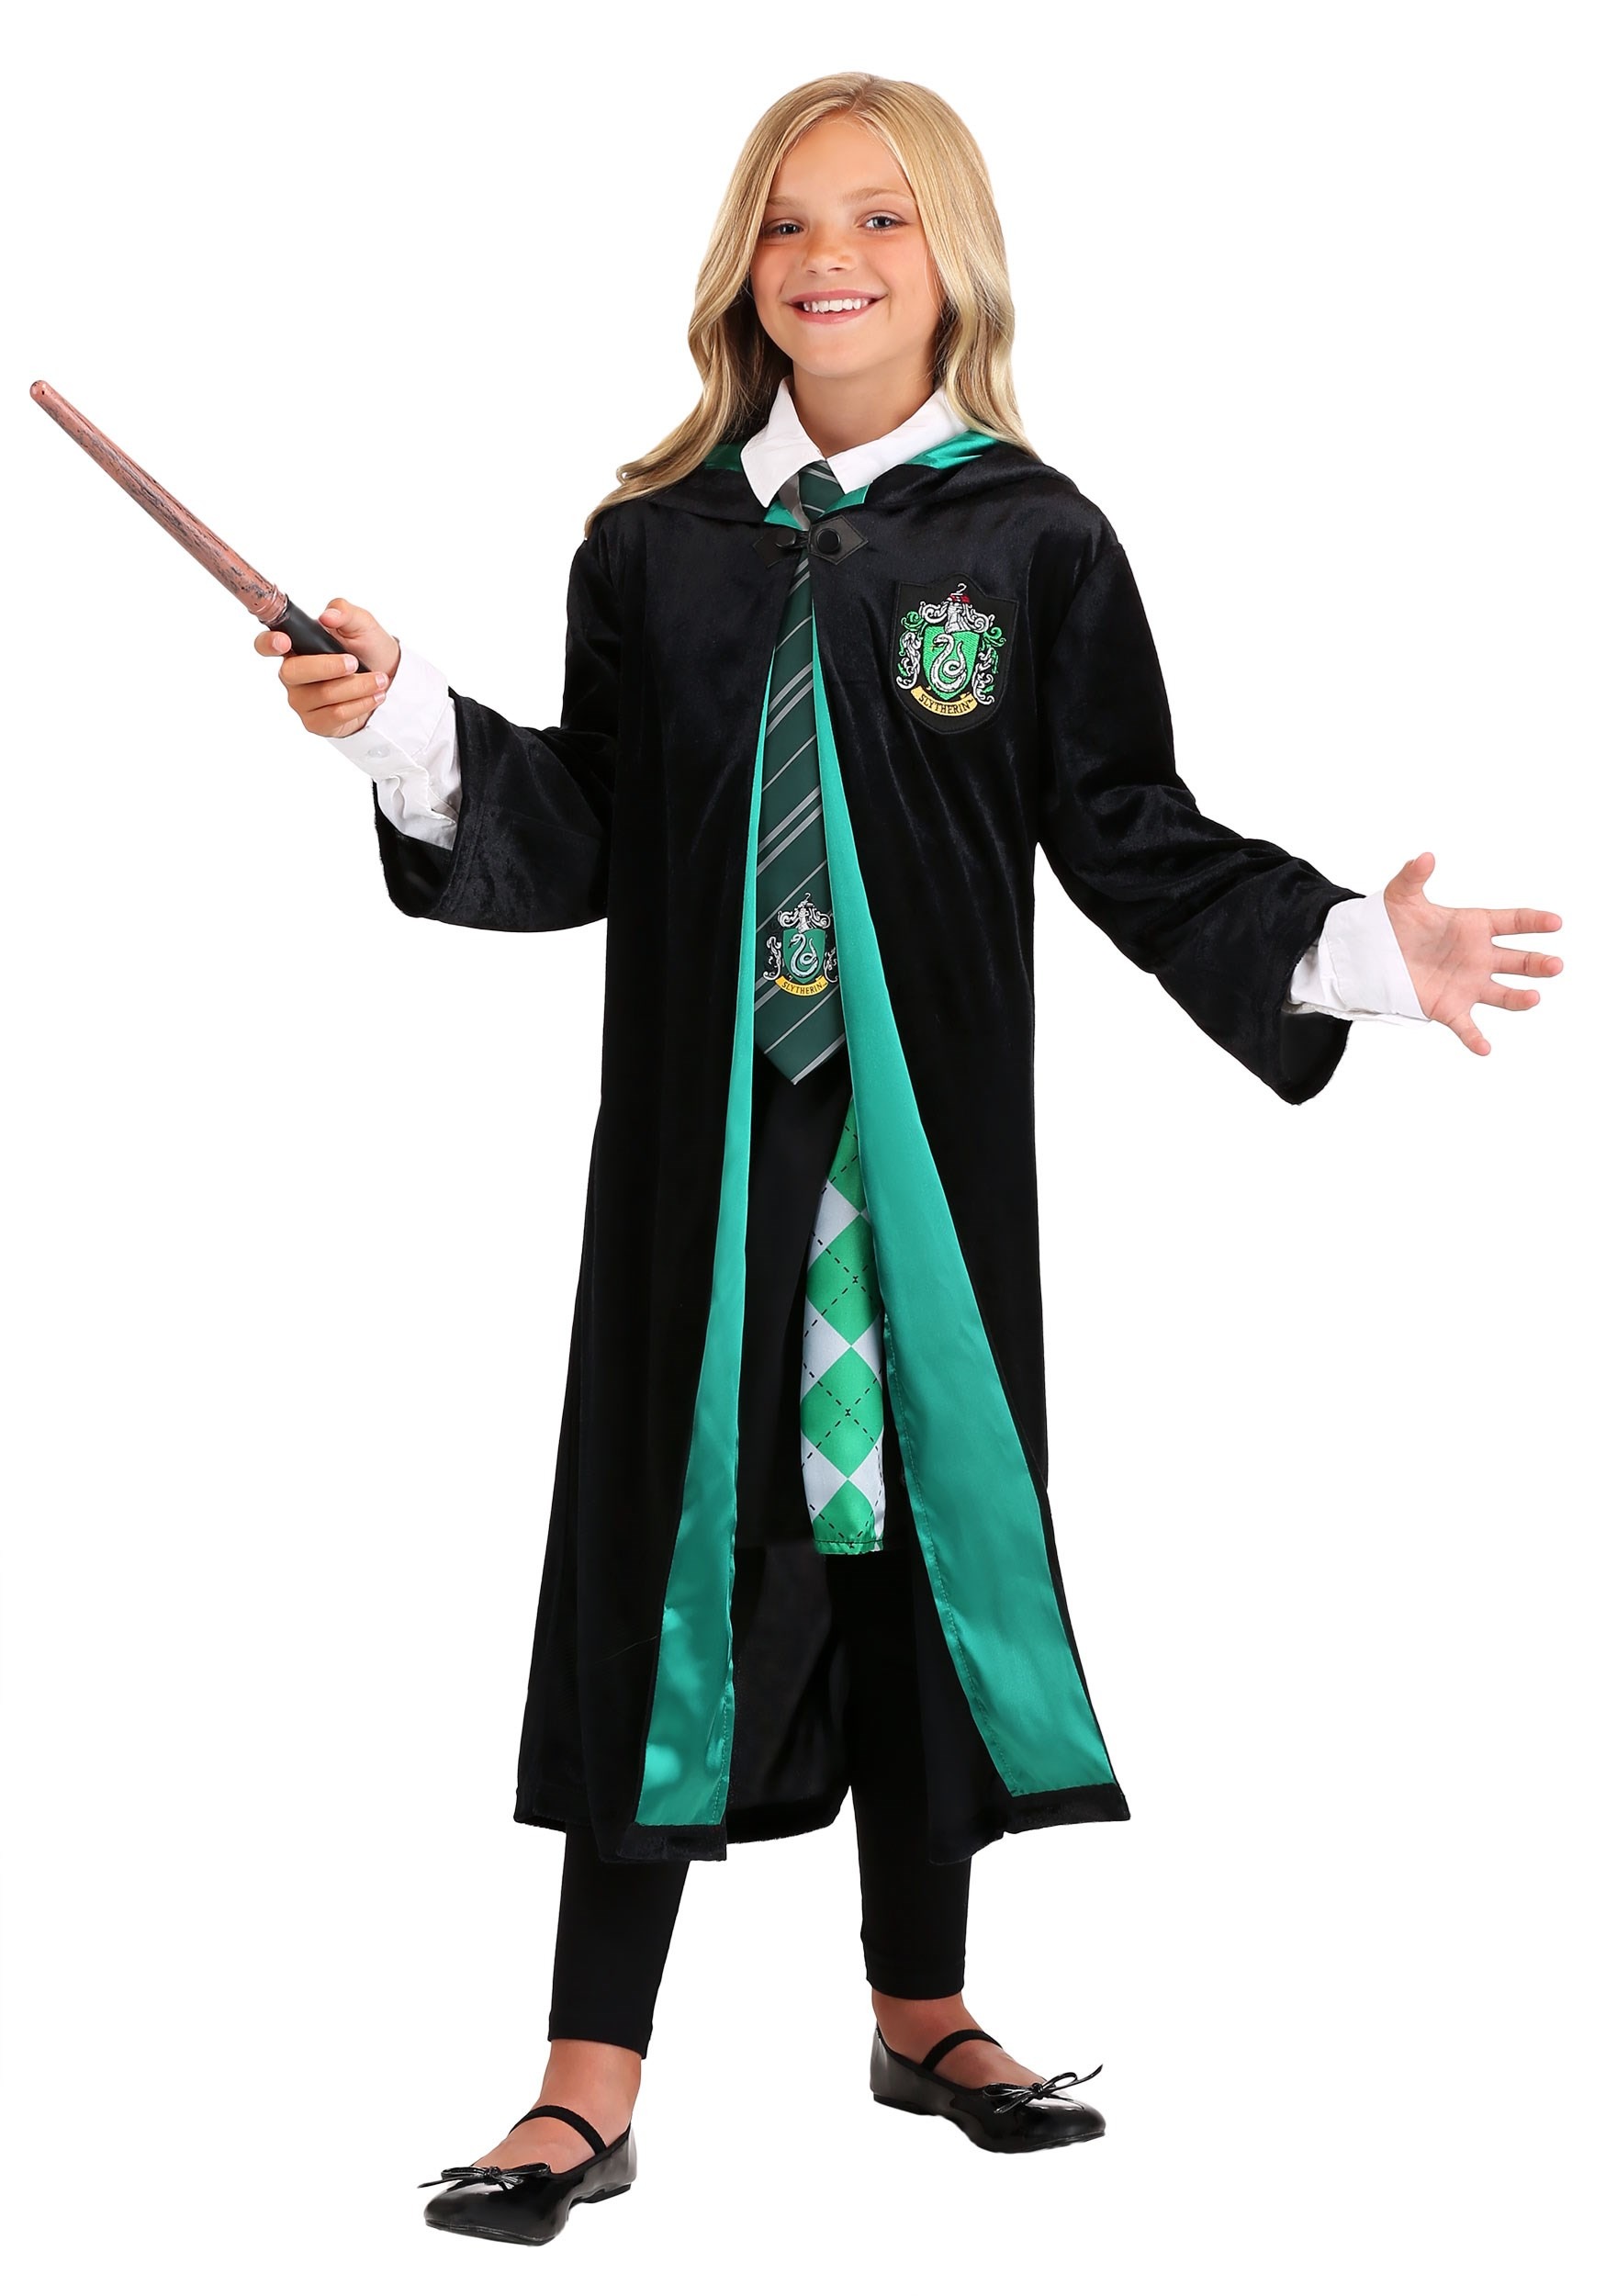 Harry Potter Slytherin Robe Kit Costume kids